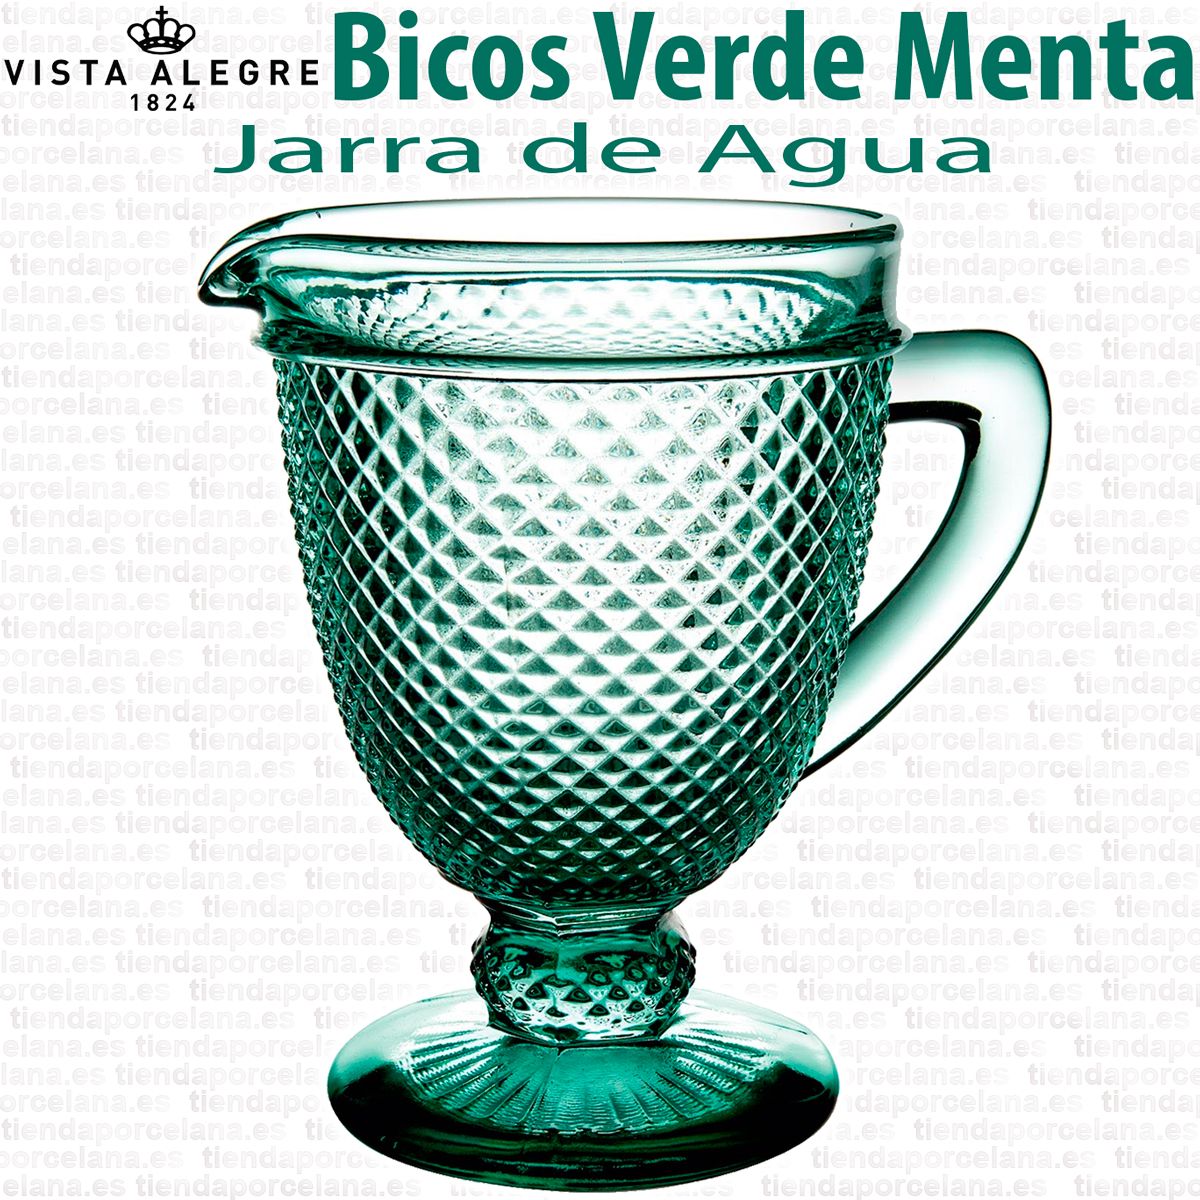 Vajillas y Cristalerías vintage - Jarra de Agua Cristal Bicos - Picos Verde  Menta Vista Alegre Atlantis